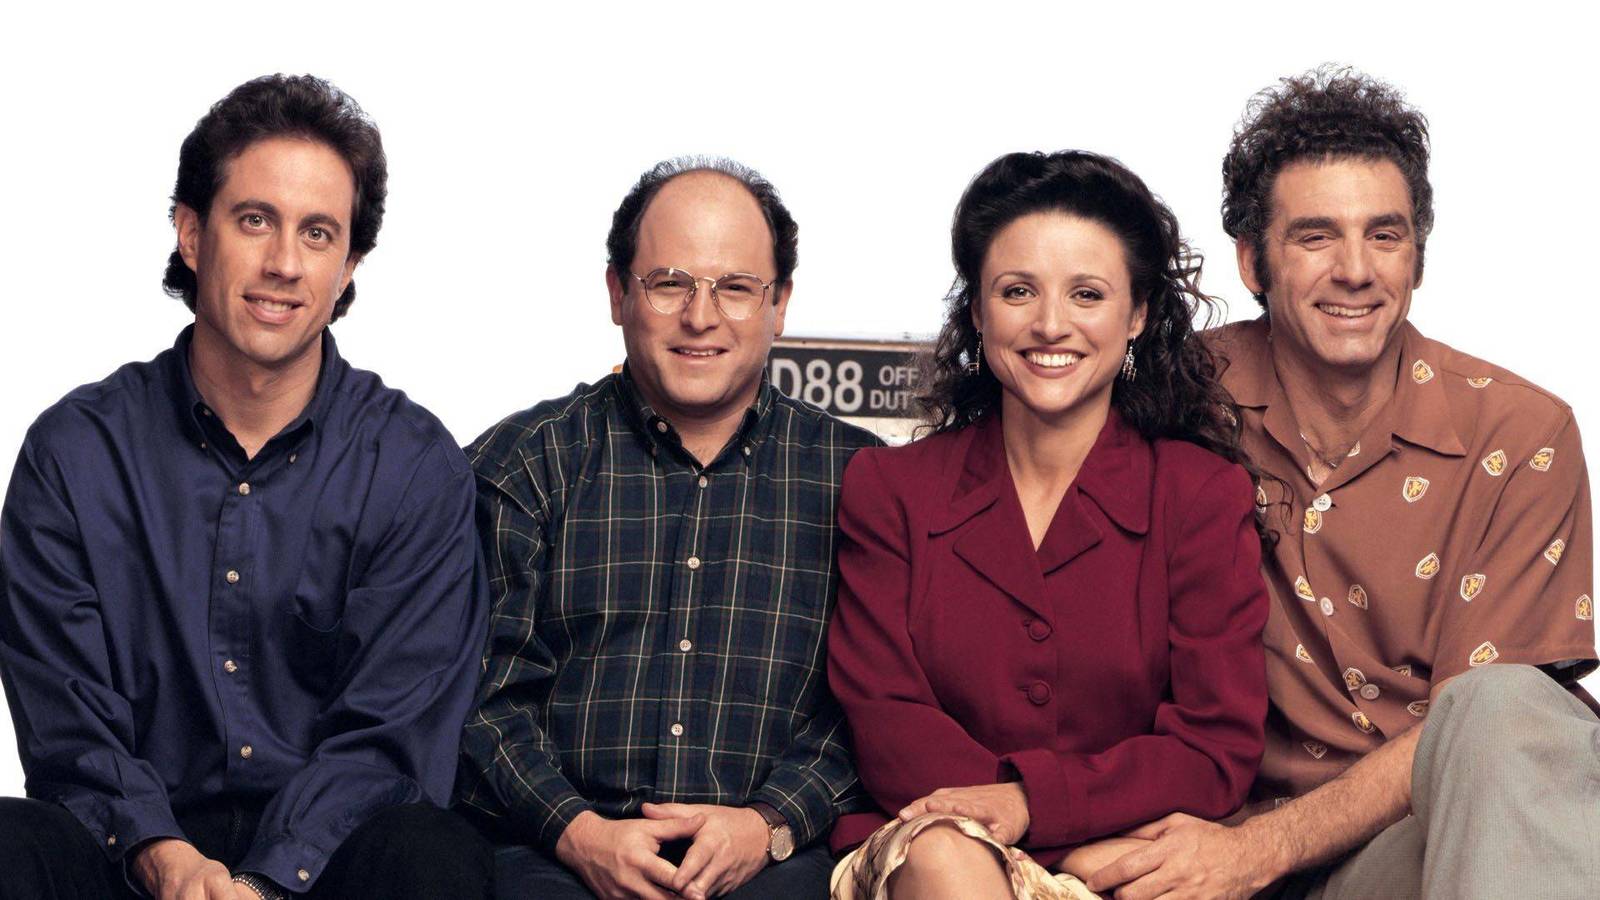 LOCURA: ¡Netflix adquiere los derechos de Seinfeld y vamos a poder ver la serie completa!